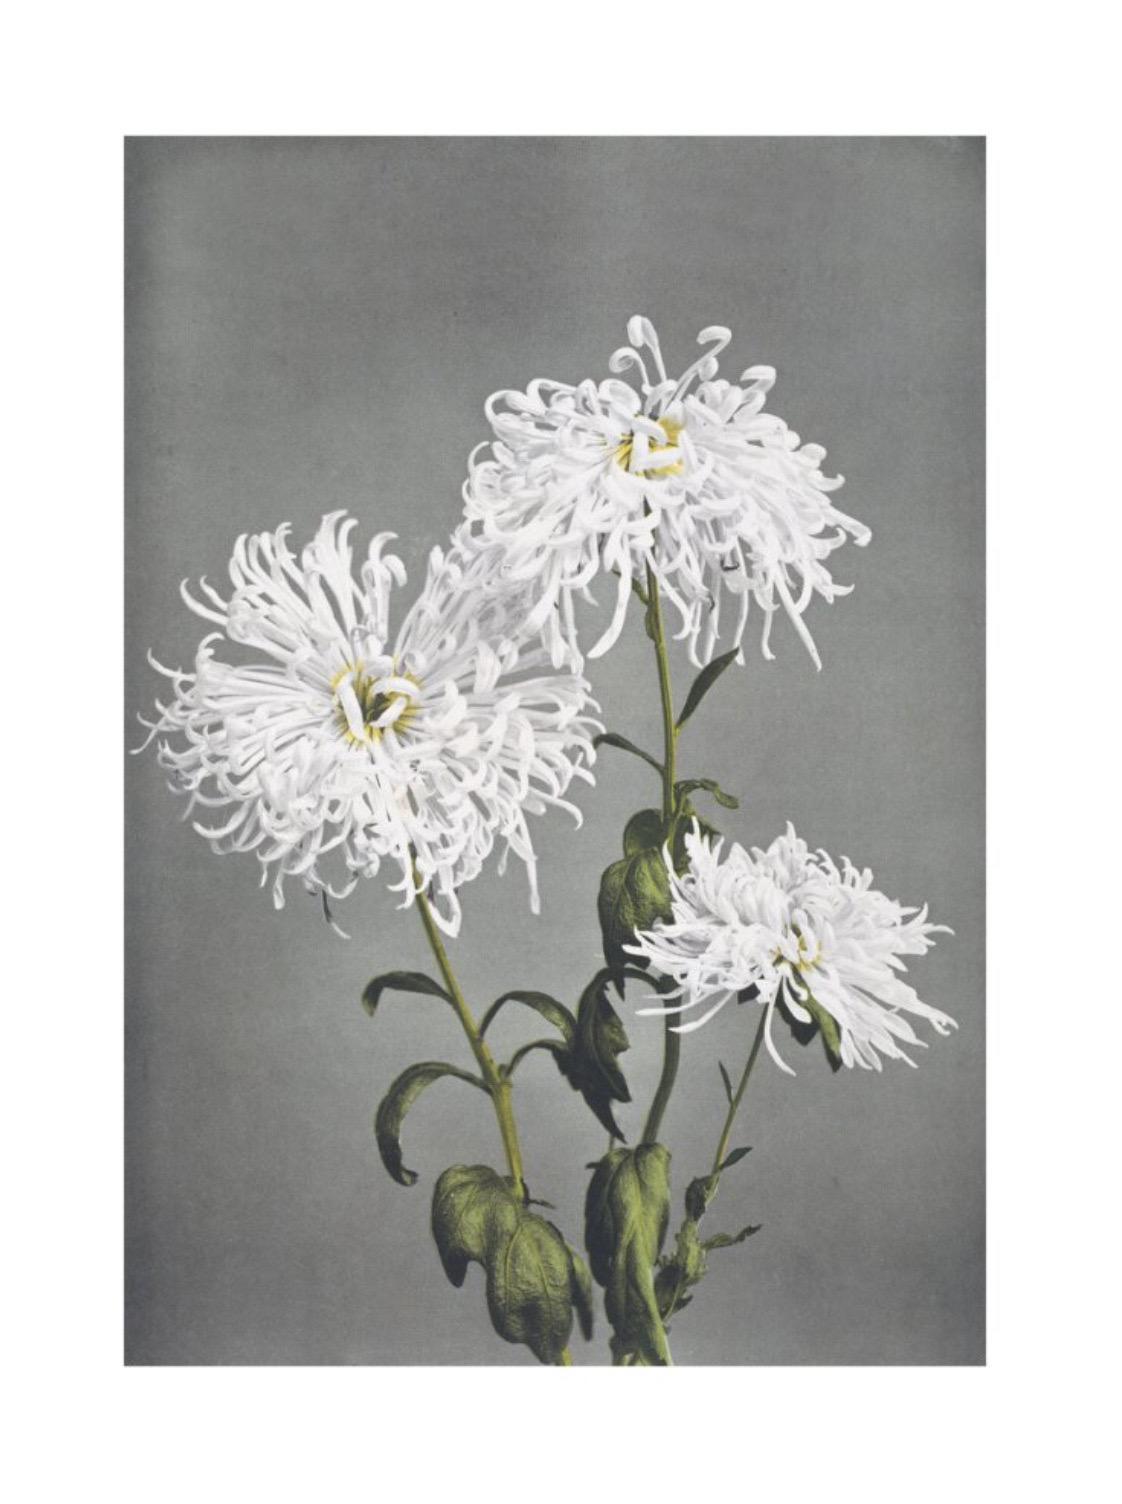 Ogawa Kazumasa, Chrysantheme, aus einigen japanischen Blumen

Gicléedruck auf mattem 250 g/m²-Konservierungspapier, hergestellt in Deutschland aus säure- und chlorfreiem Zellstoff 

Papierformat: 100 x 73 cm 
Bildgröße: 90 x 63 cm 

Dieser Druck